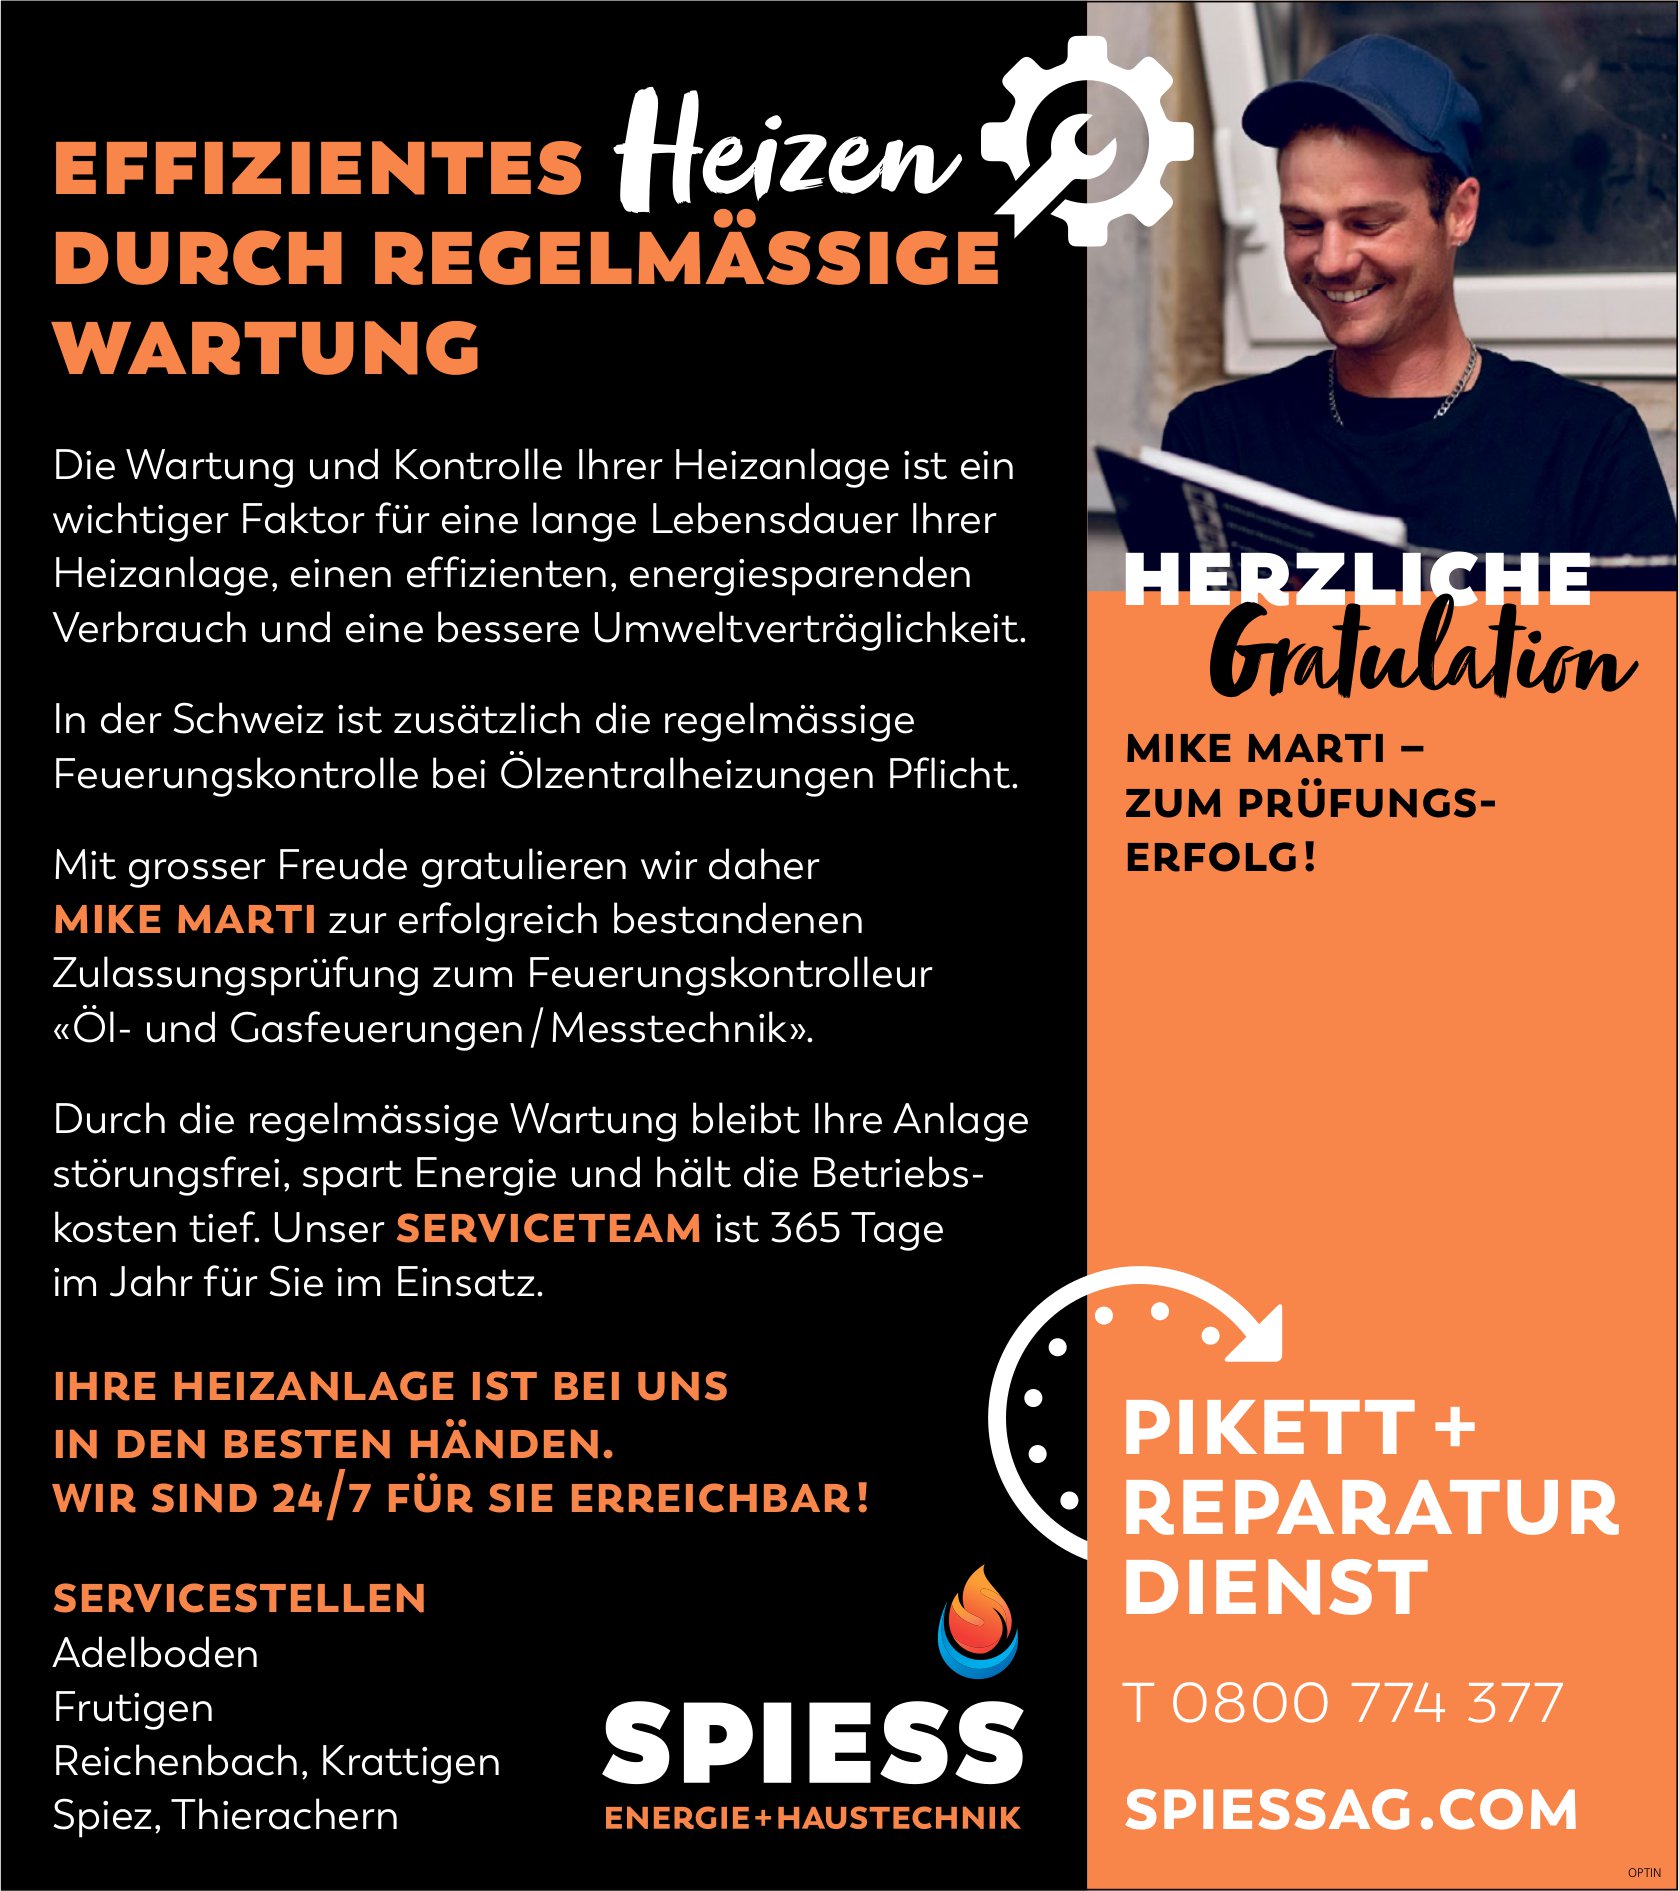 Spiess Energie + Haustechnik, Adelboden - Herzliche Gratulation, Mike Marti zum Prüfungserfolg